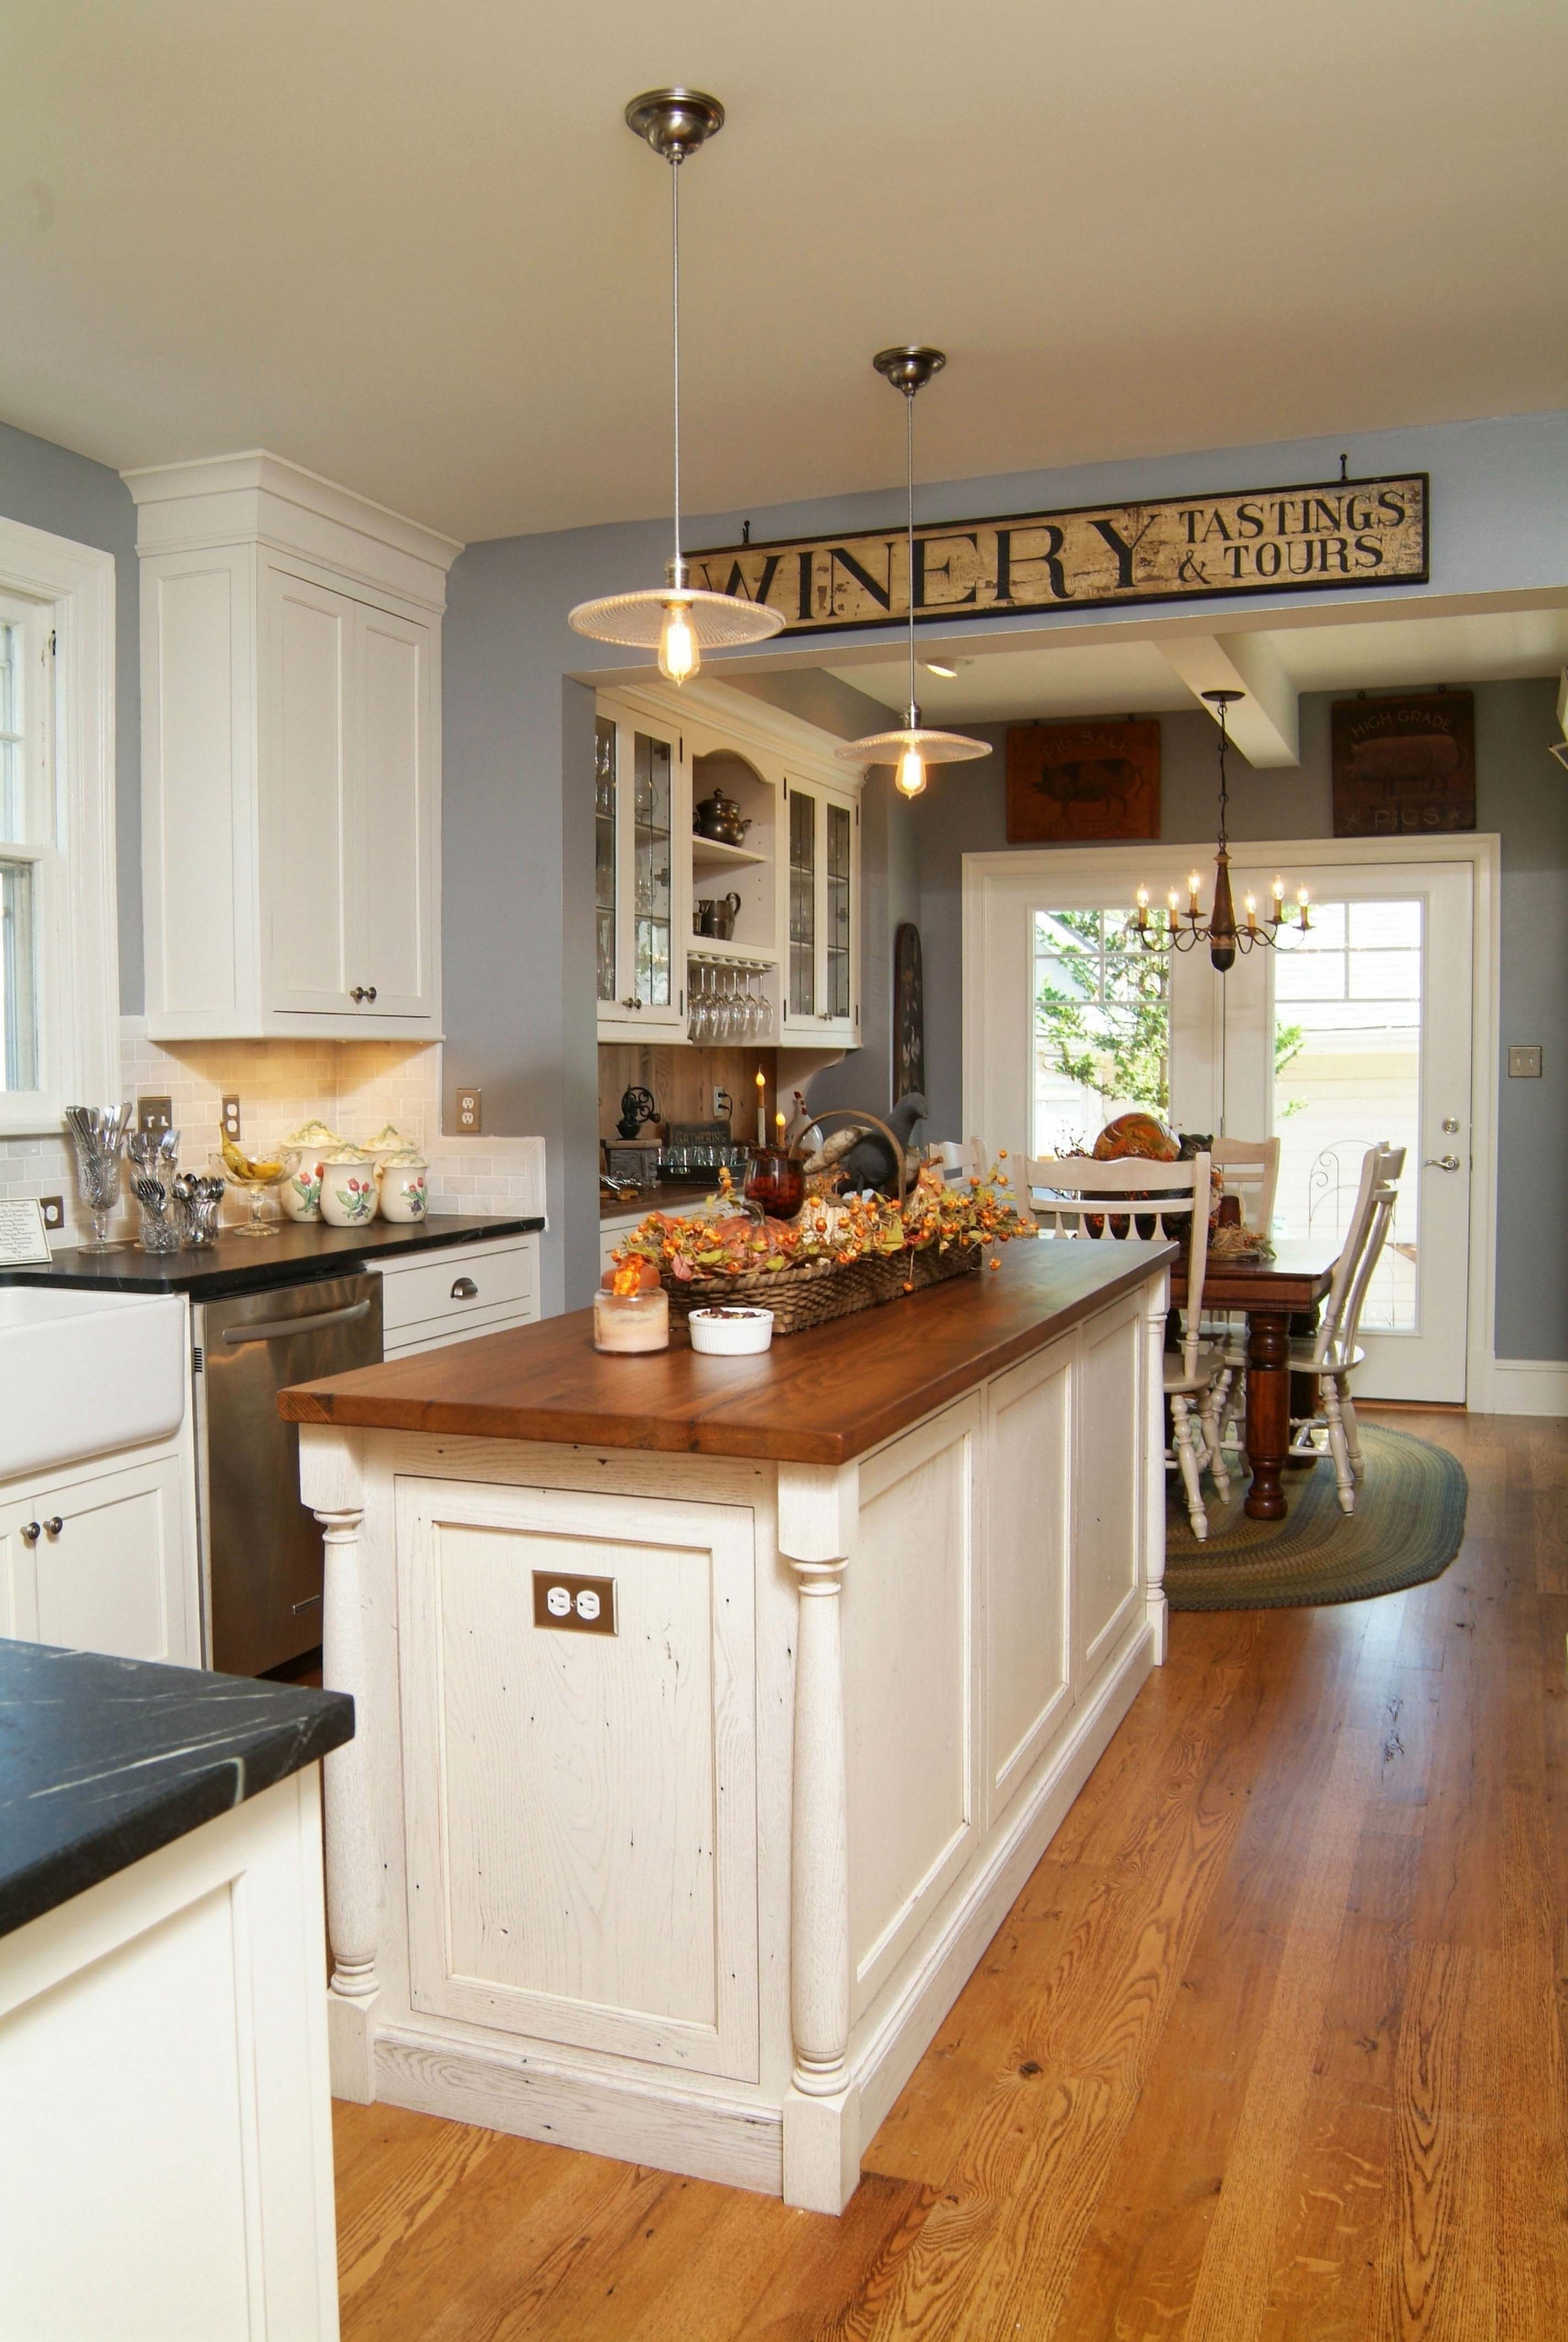 Shenandoah Kitchen & Home